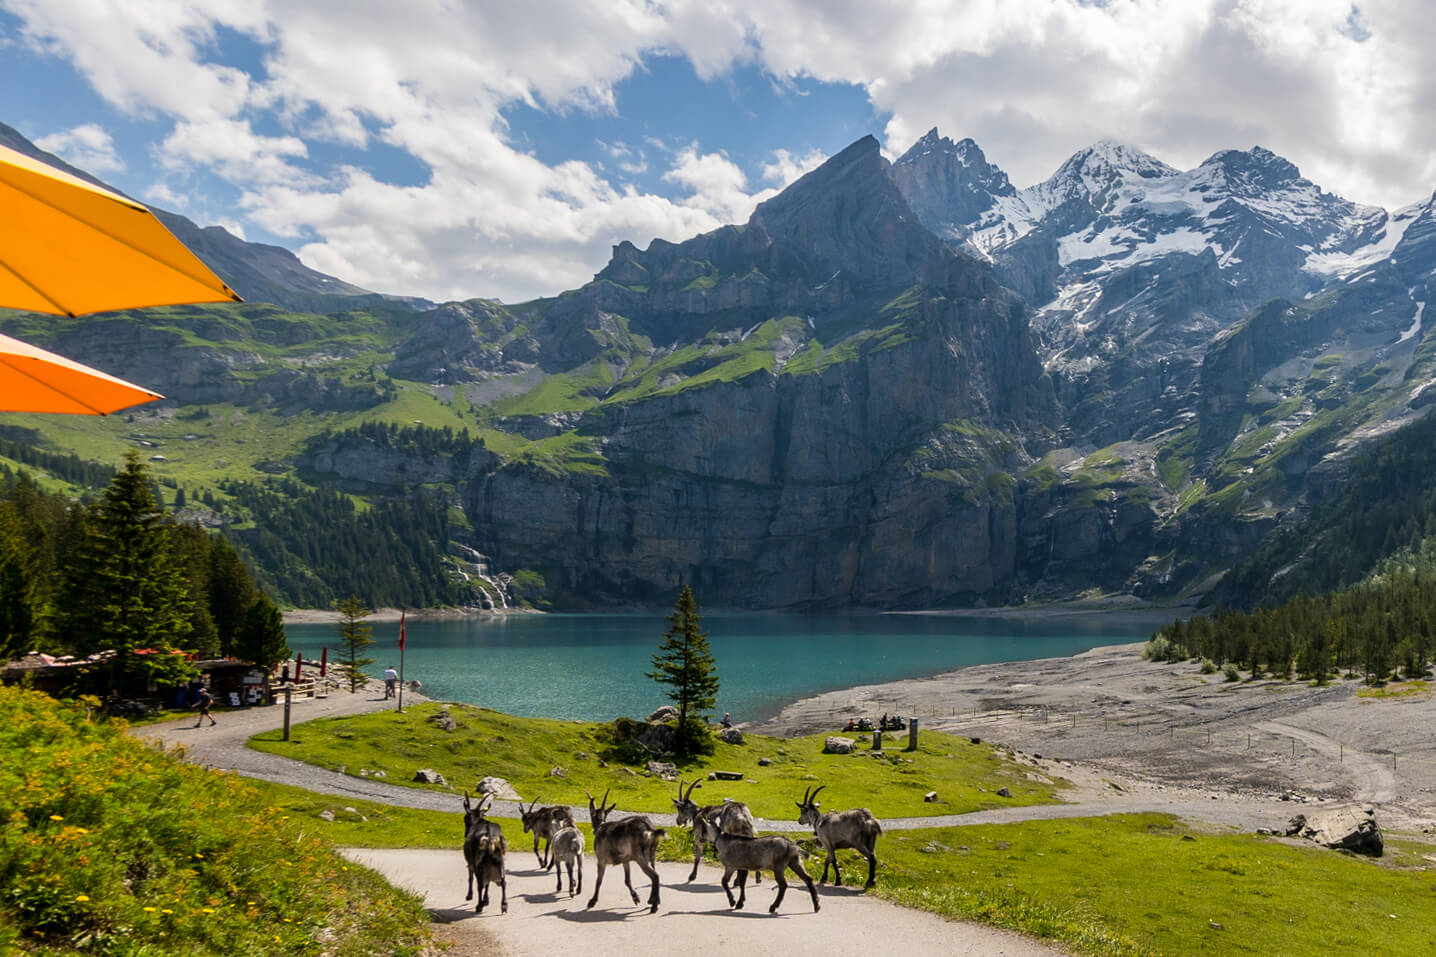 Lake Oeschinen in Switzerland